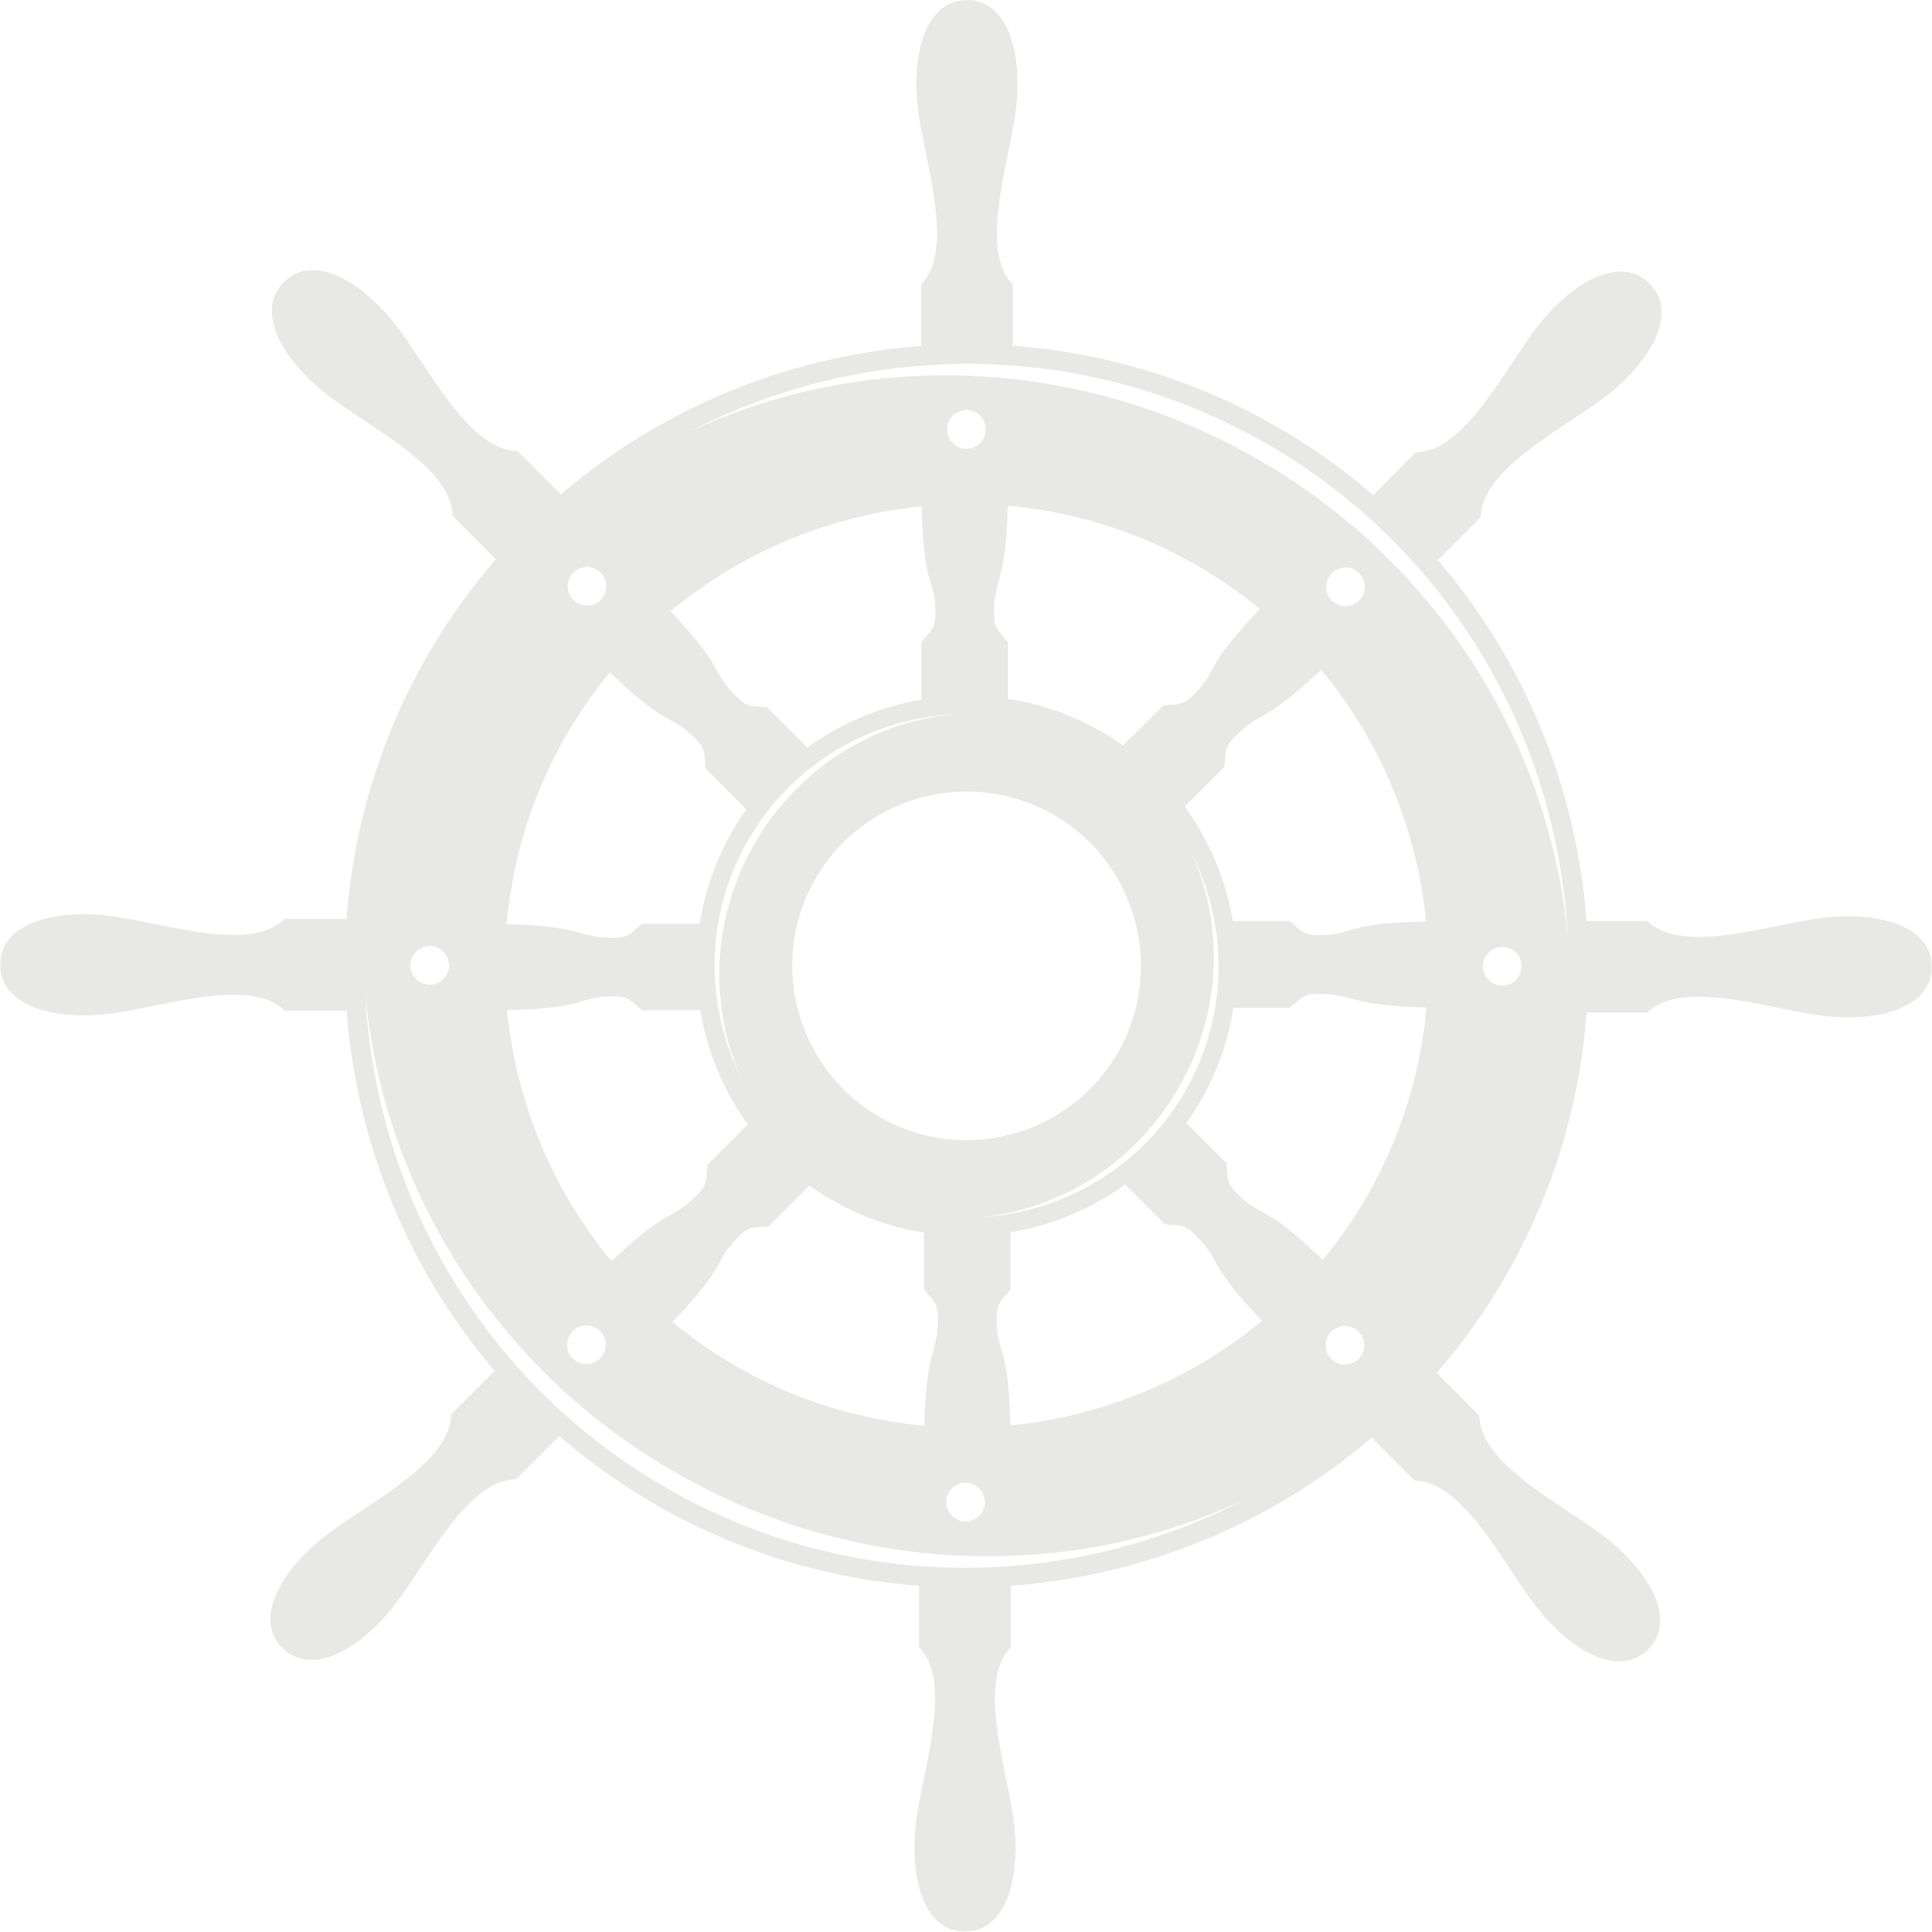 Daufuskie Island Ferry Logo